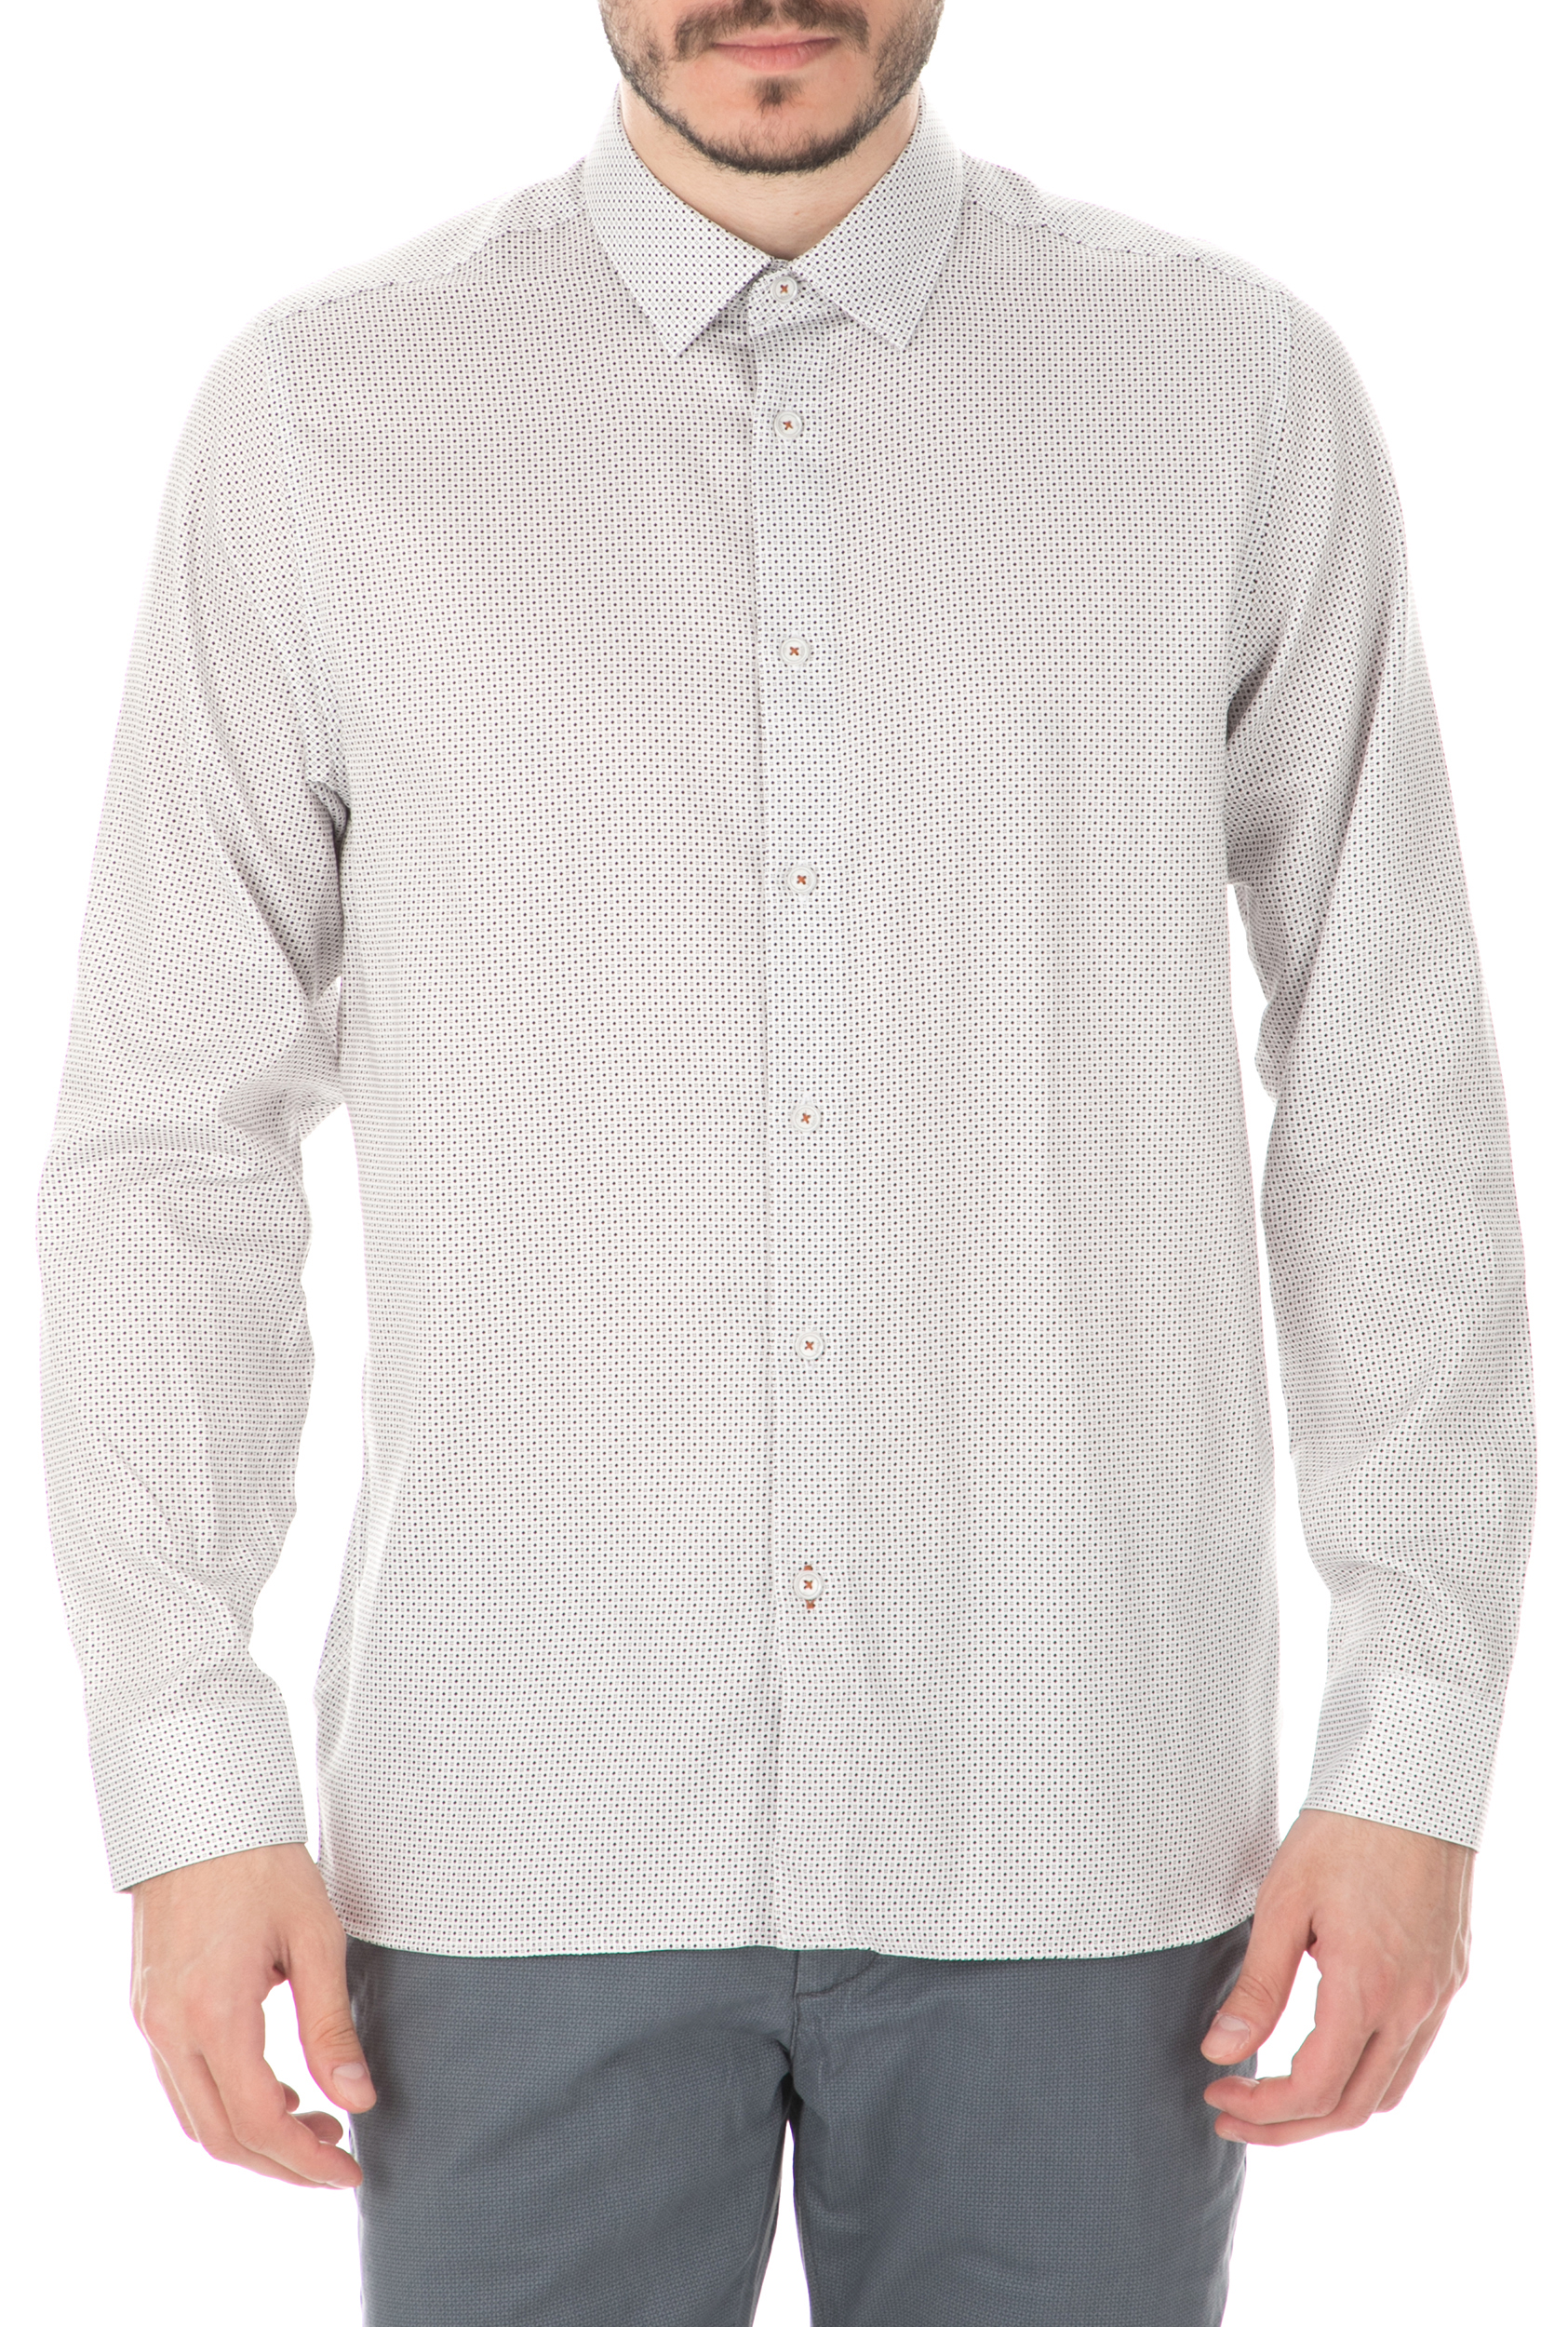 TED BAKER - Ανδρικό πουκάμιο TED BAKER λευκό Ανδρικά/Ρούχα/Πουκάμισα/Μακρυμάνικα